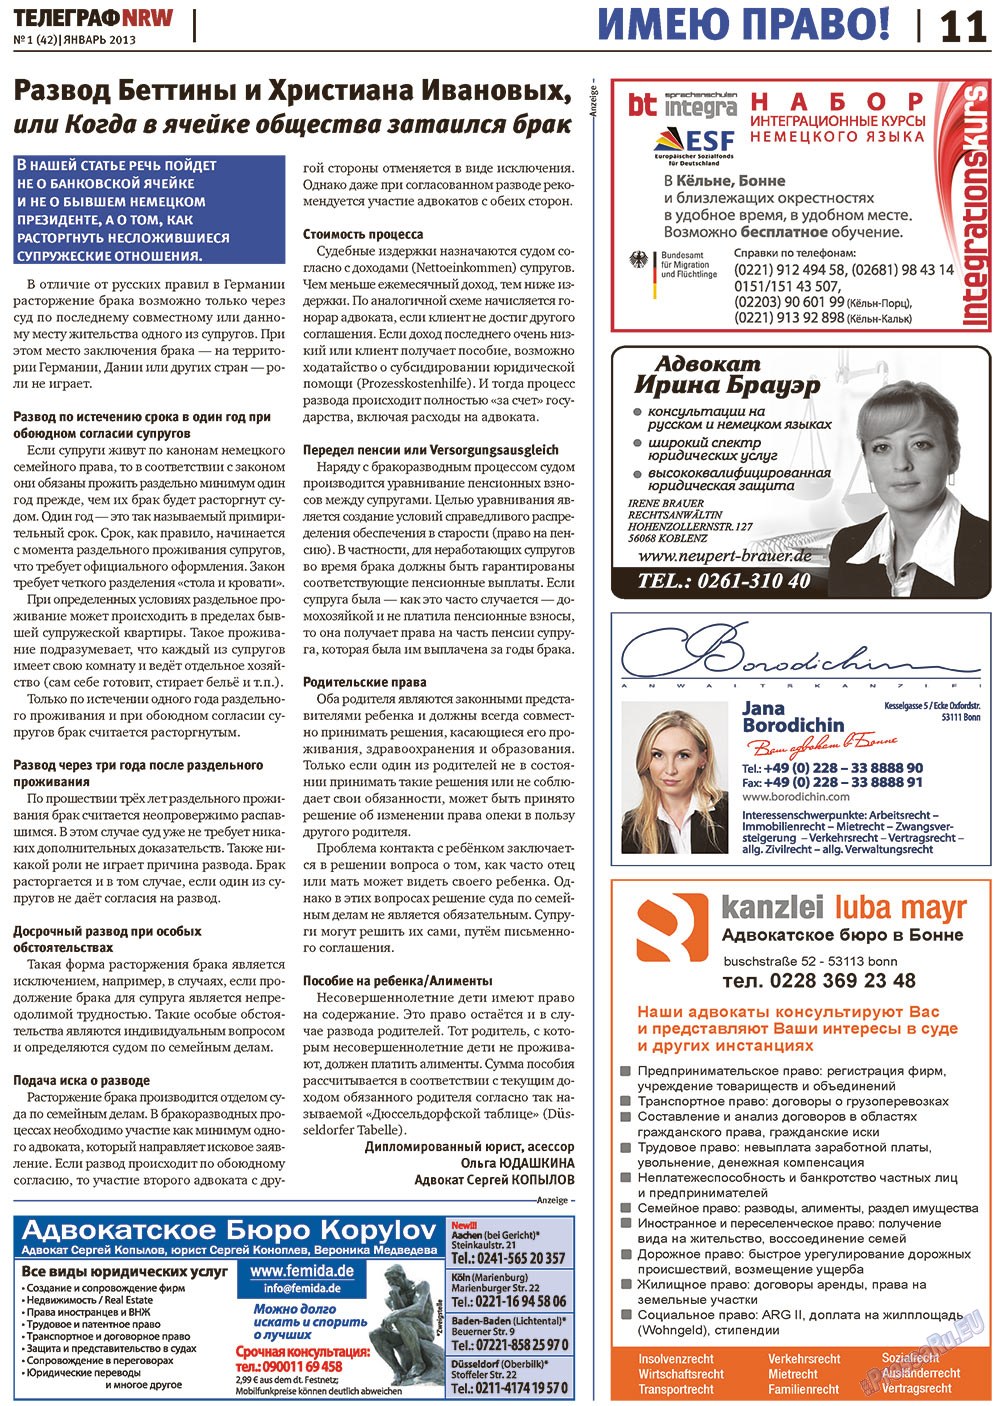 Телеграф NRW (газета). 2013 год, номер 1, стр. 11